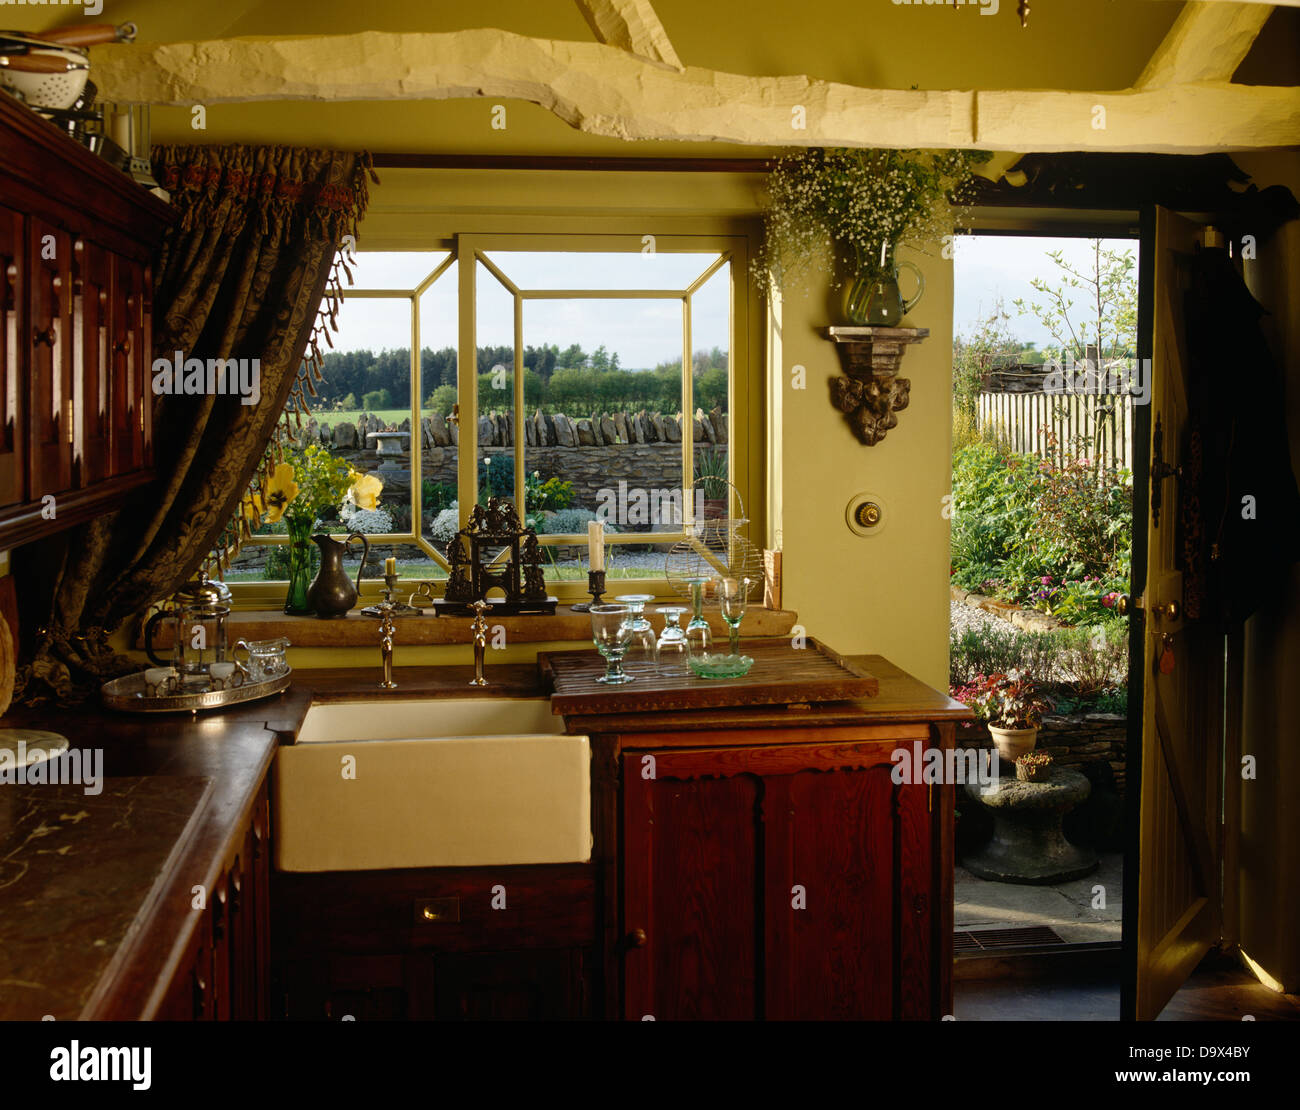 Old fashioned Belfast disparaître sous fenêtre dans country style cuisine avec porte ouverte et poutres au plafond rustique peint crème Banque D'Images